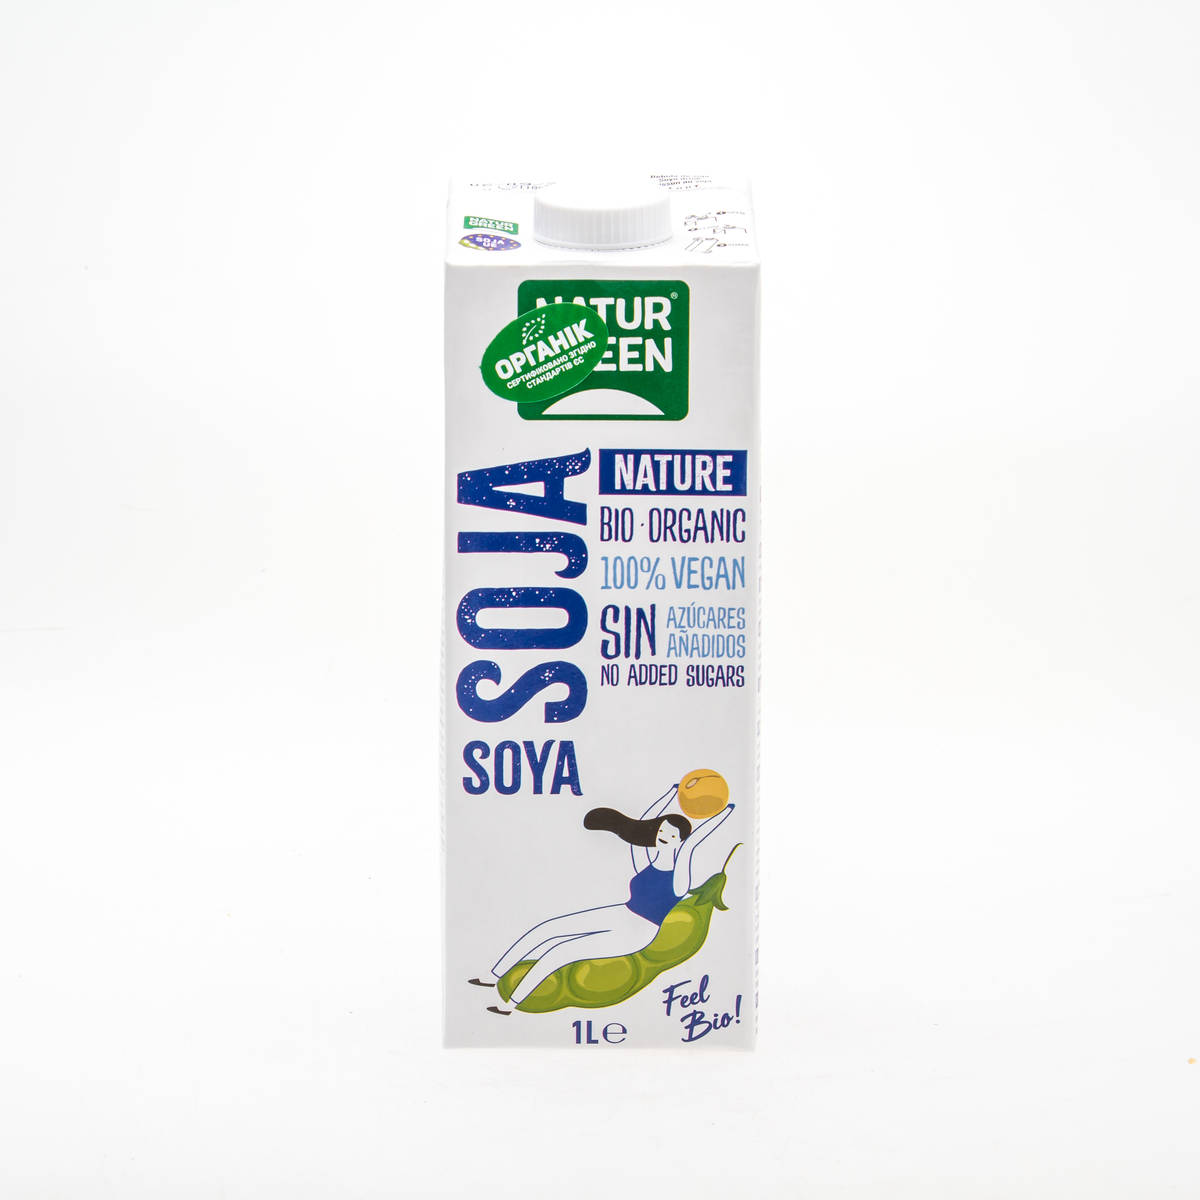 Органічне рослинне молоко з сої без цукру, 1л - купить в интернет-магазине Юнимед